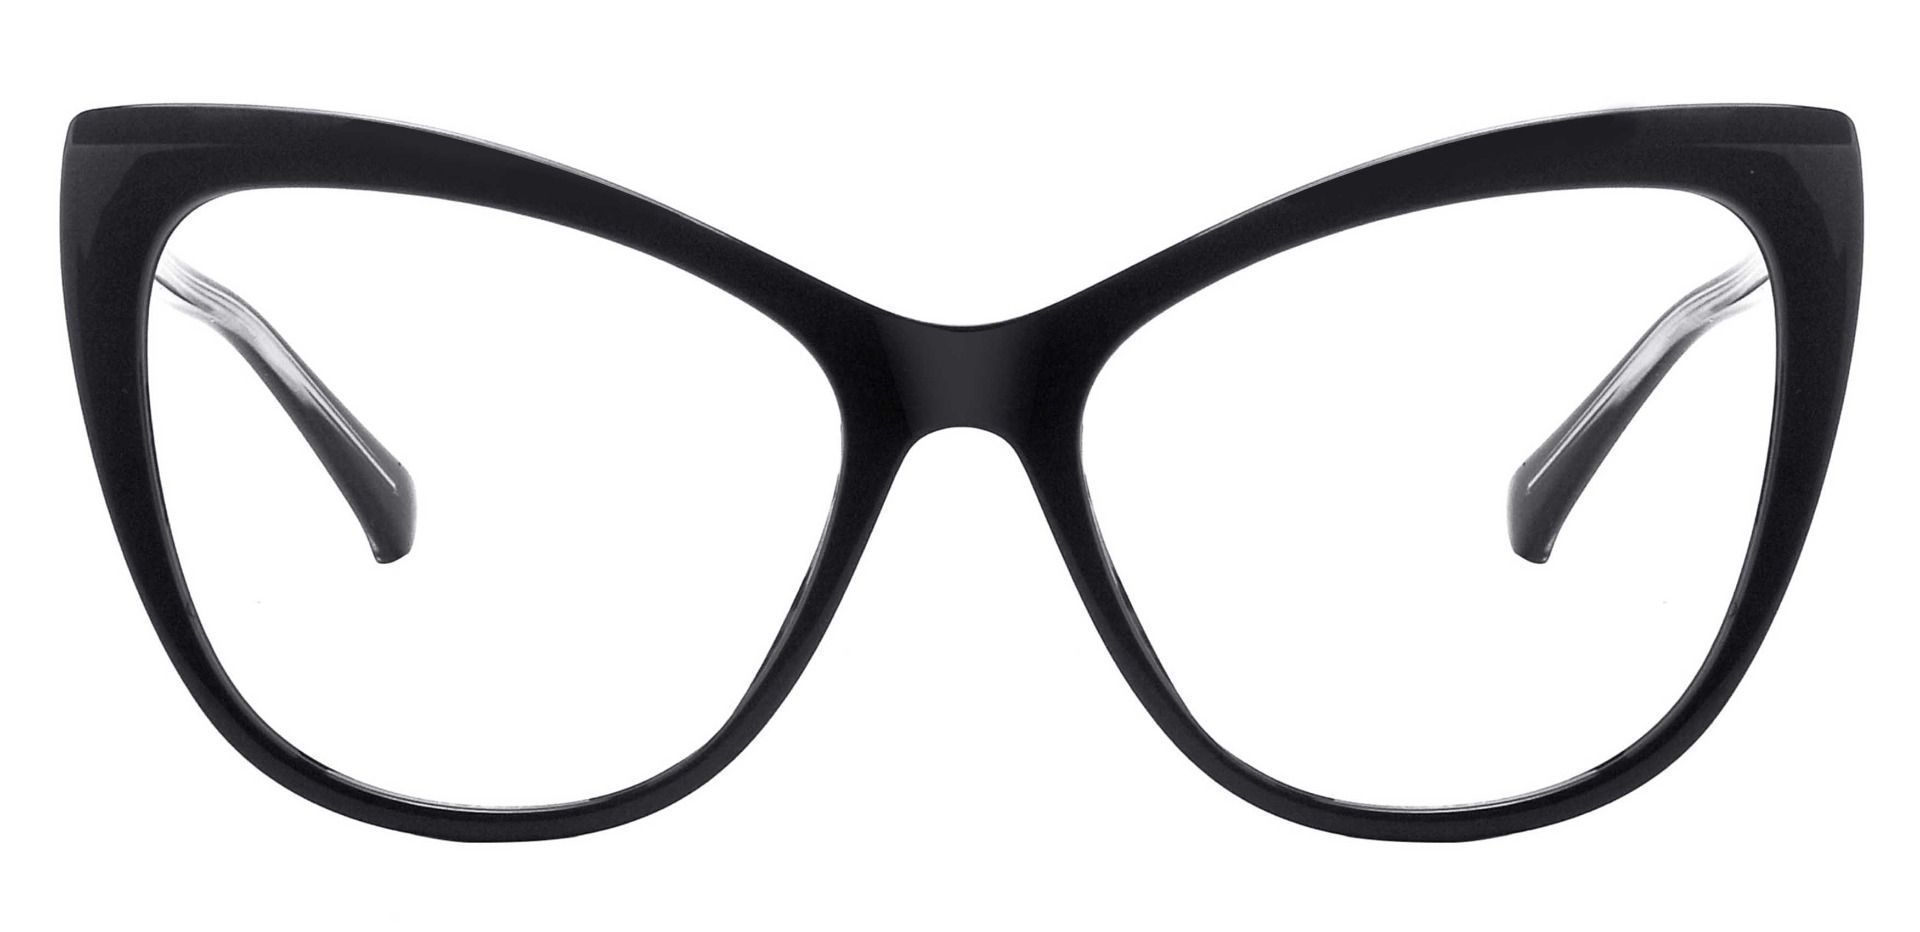 Norma Cat Eye Prescription Glasses Black Women S Eyeglasses Payne Glasses